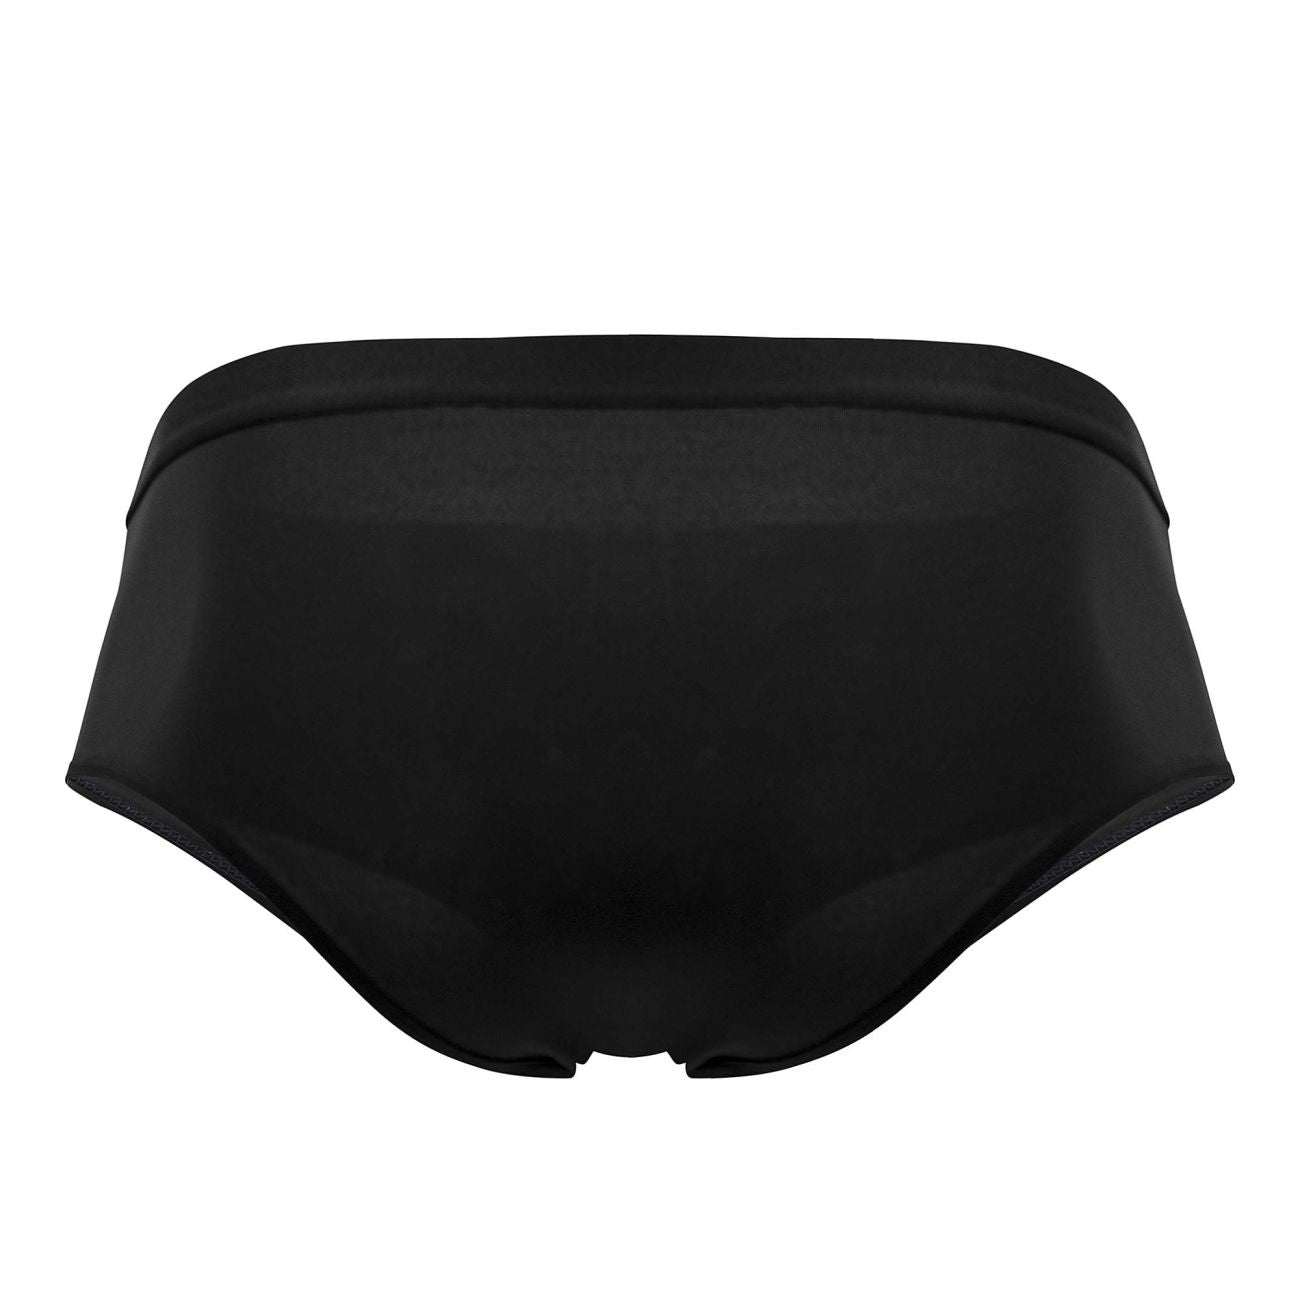 PLURAL PL004 Non-binary Underwear High Waisted Briefs Black